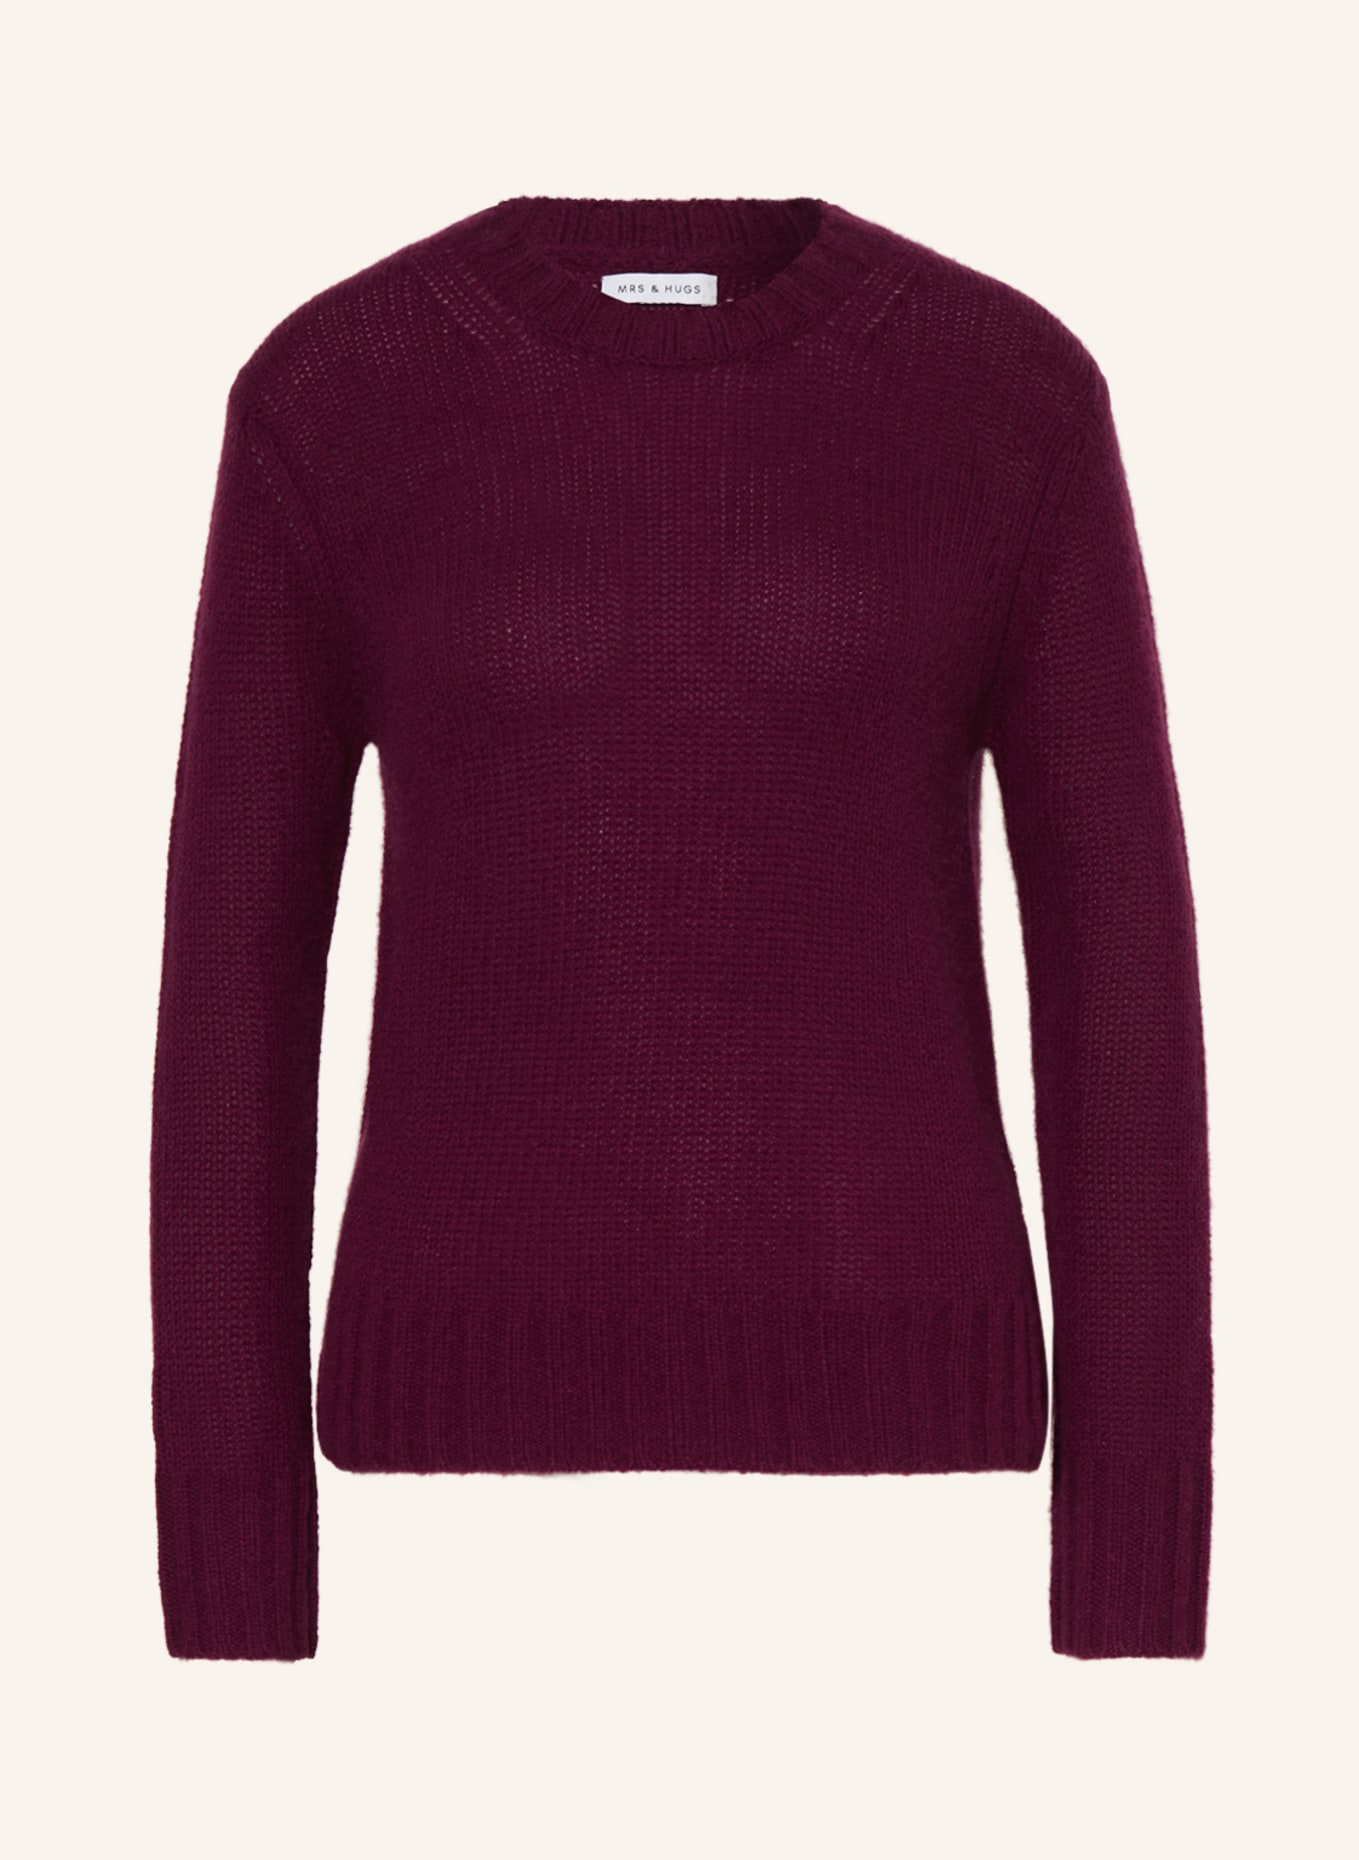 MRS & HUGS Cashmere-Pullover, Farbe: DUNKELROT (Bild 1)